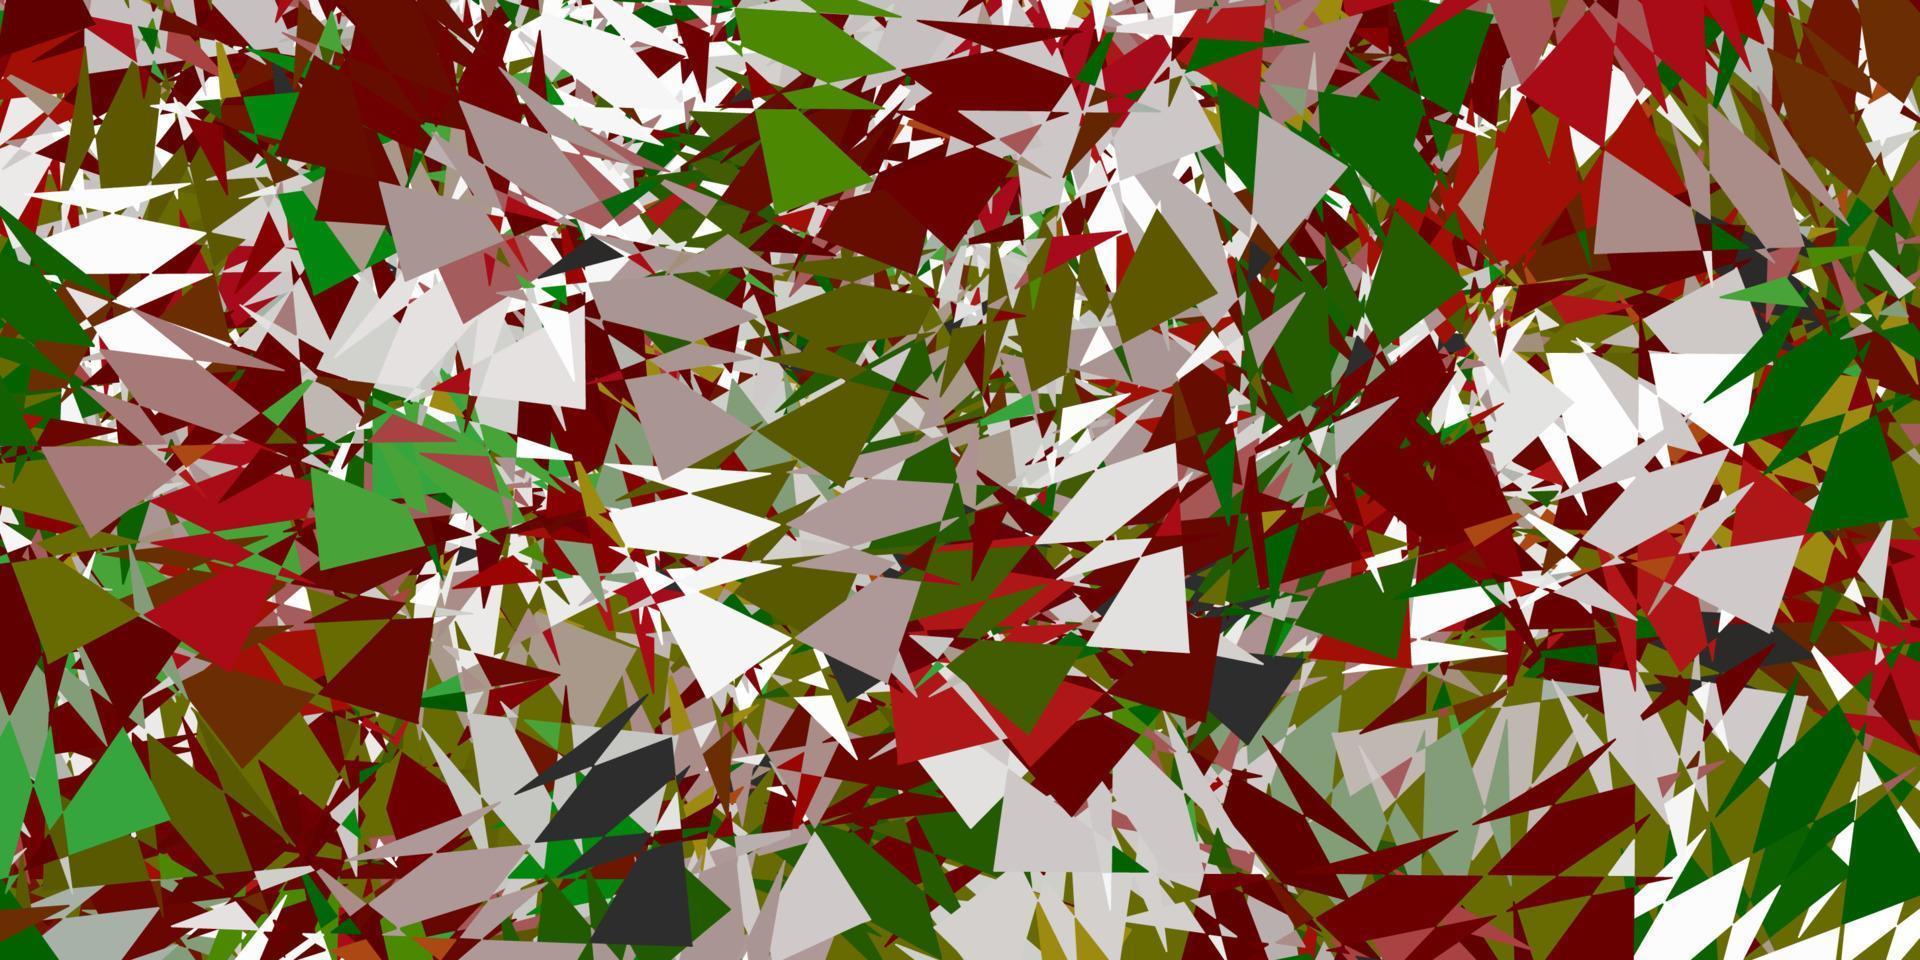 ljusgrön, röd vektorlayout med triangelformer. vektor